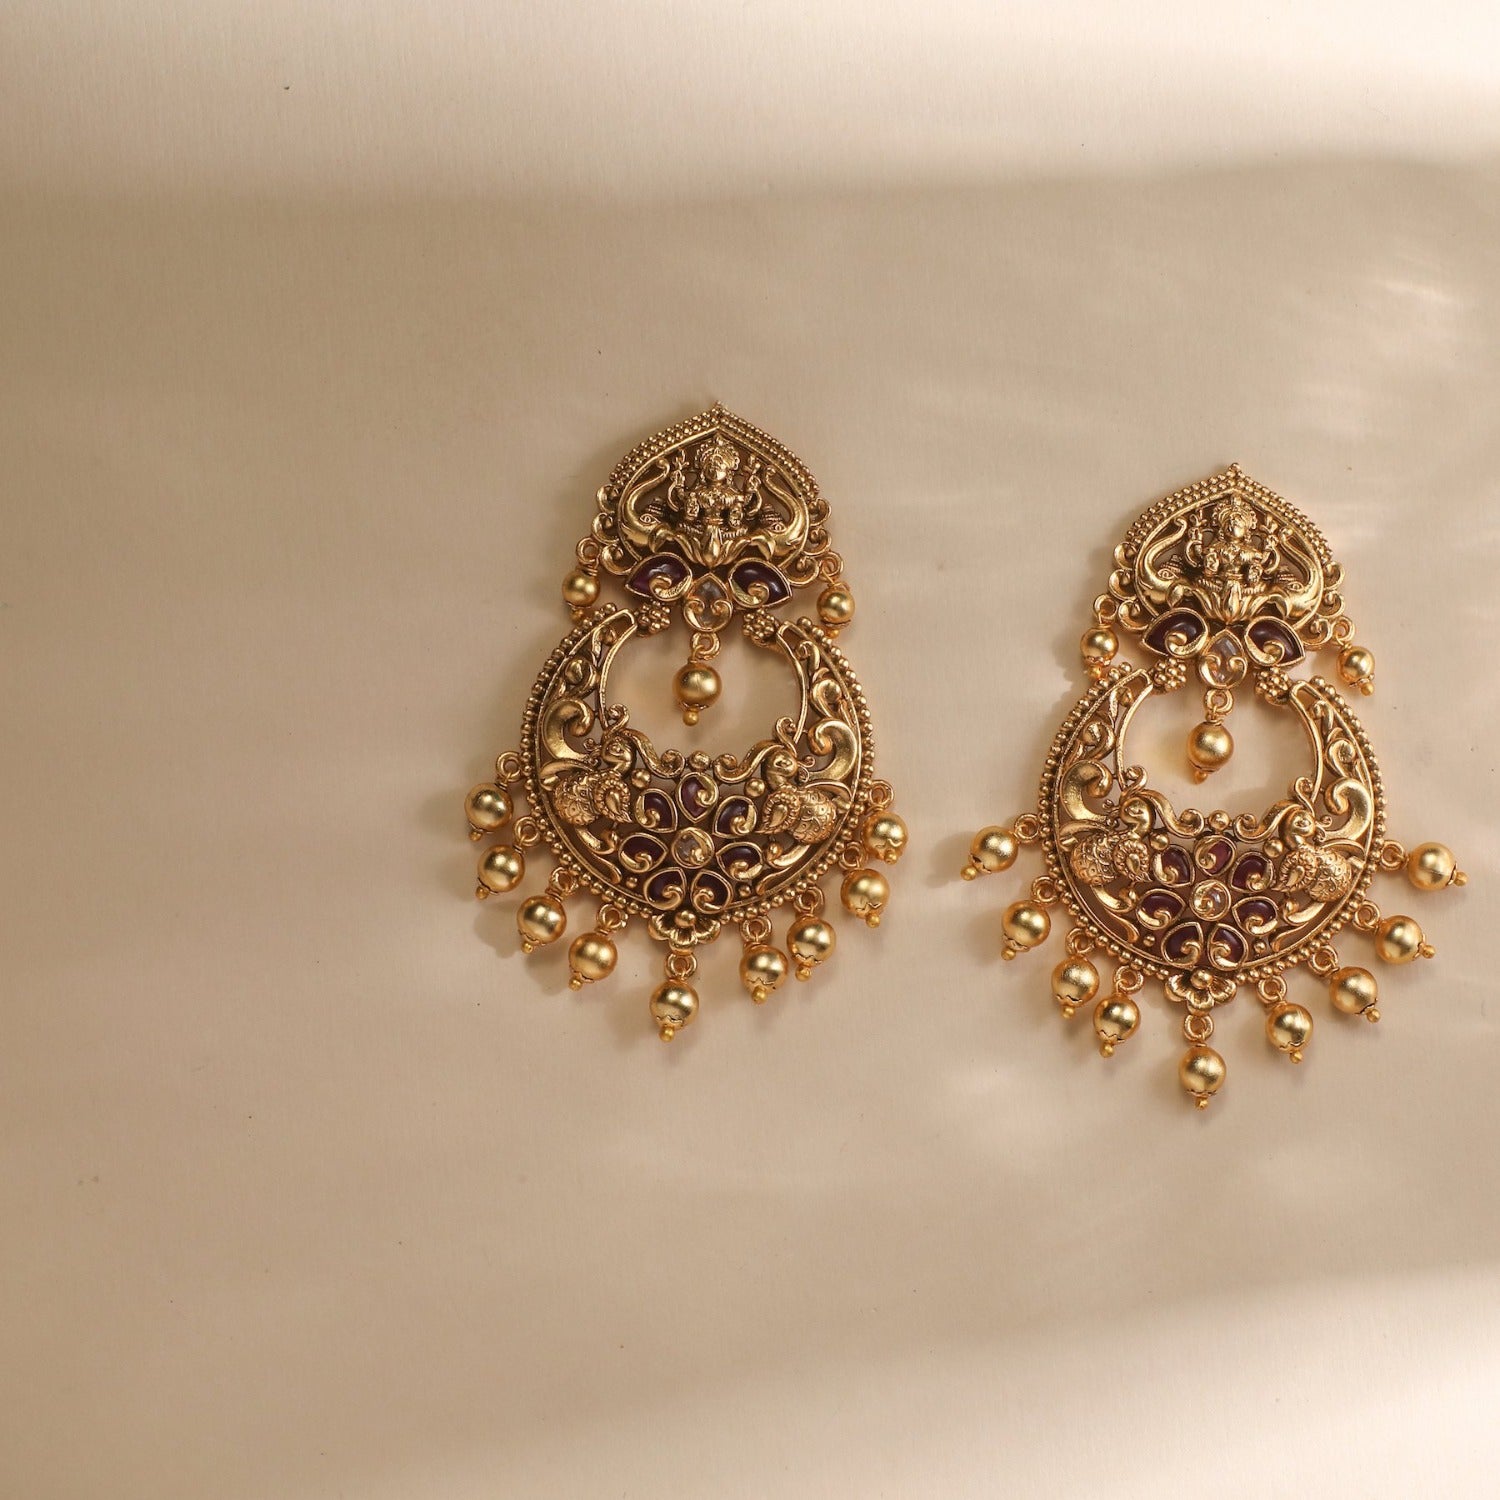 Shop Chandbali Earrings Online at Best Price - Rebaari